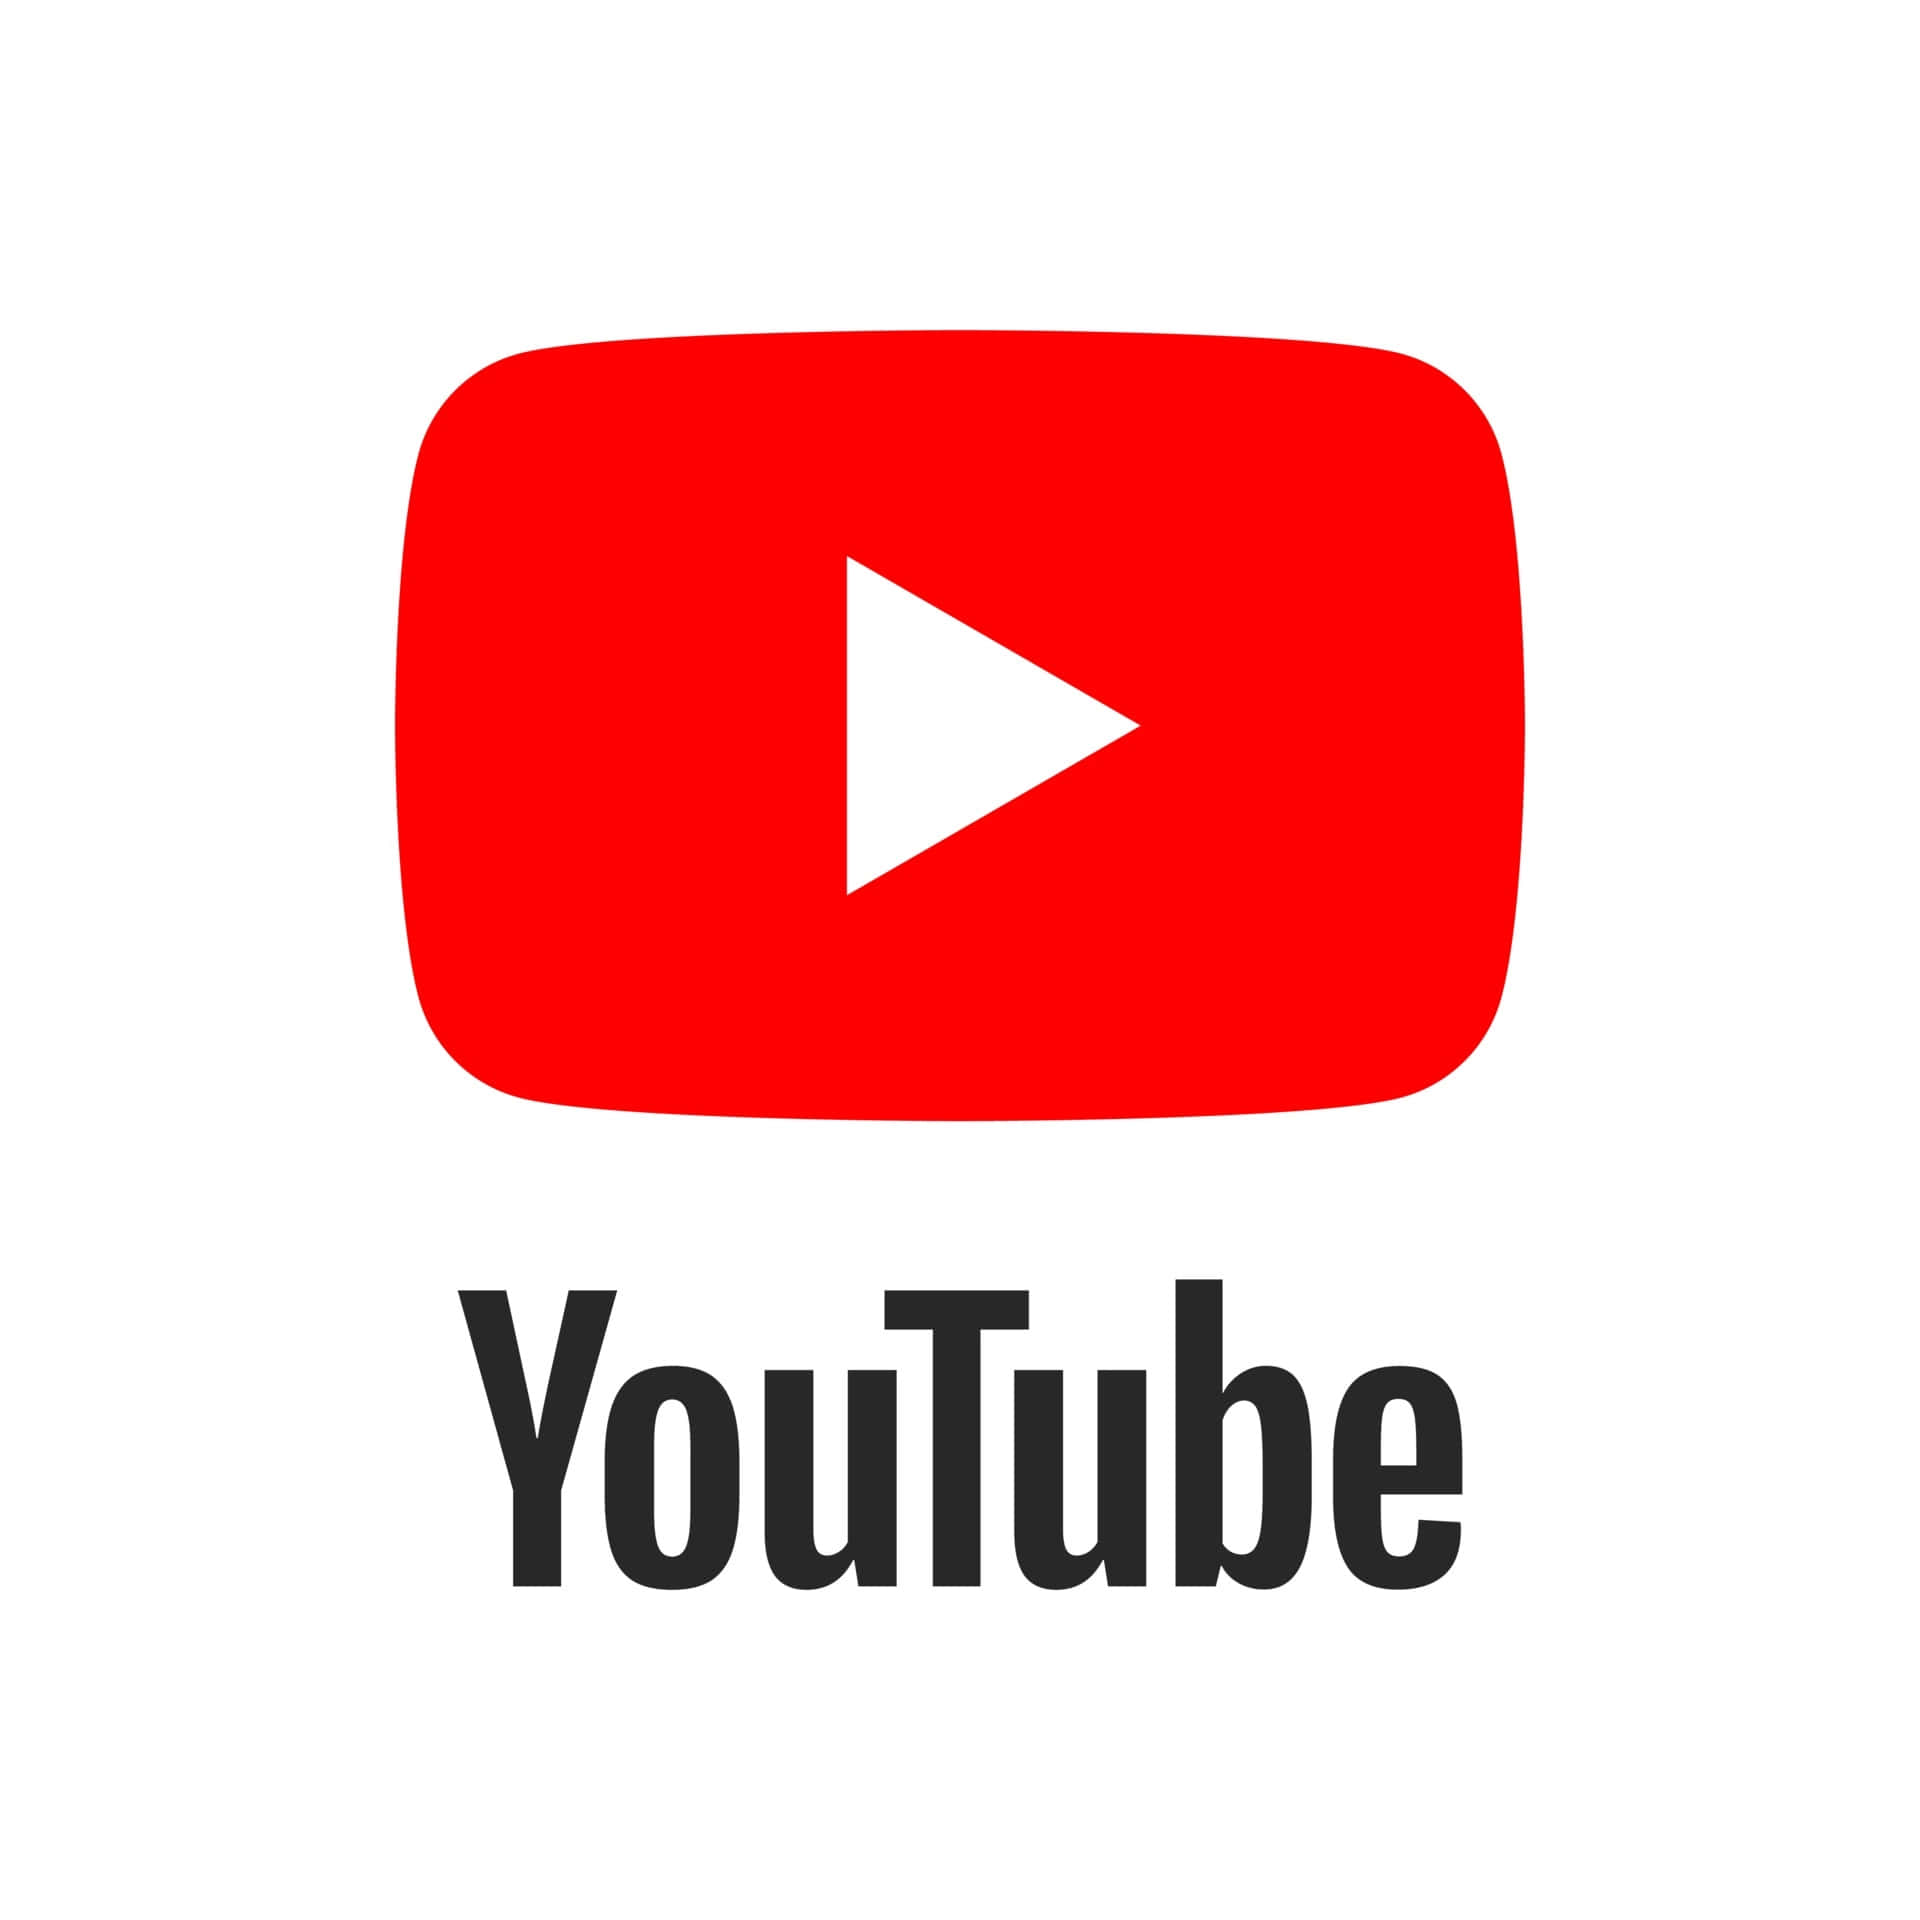 Et youtube logo med en rød pil, der klatrer op langs venstre side